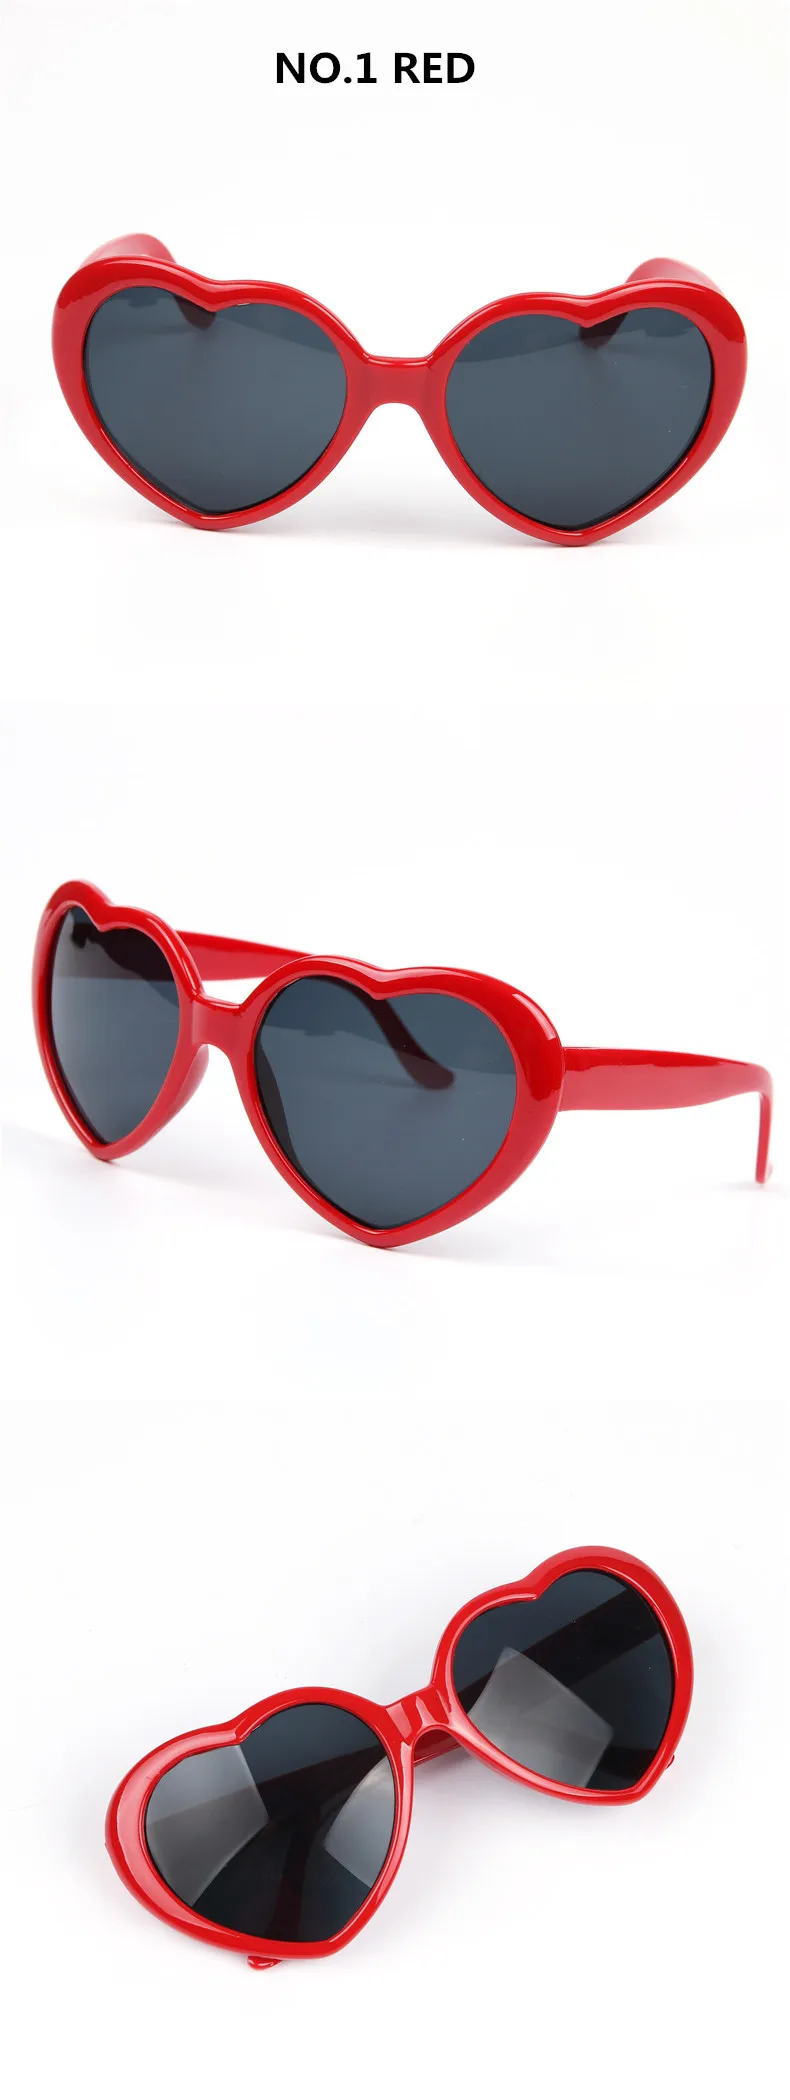 NYWOOH милые Солнцезащитные очки в форме сердца, женские модные брендовые дизайнерские Винтажные Солнцезащитные очки для детей, милые очки для мальчиков и девочек